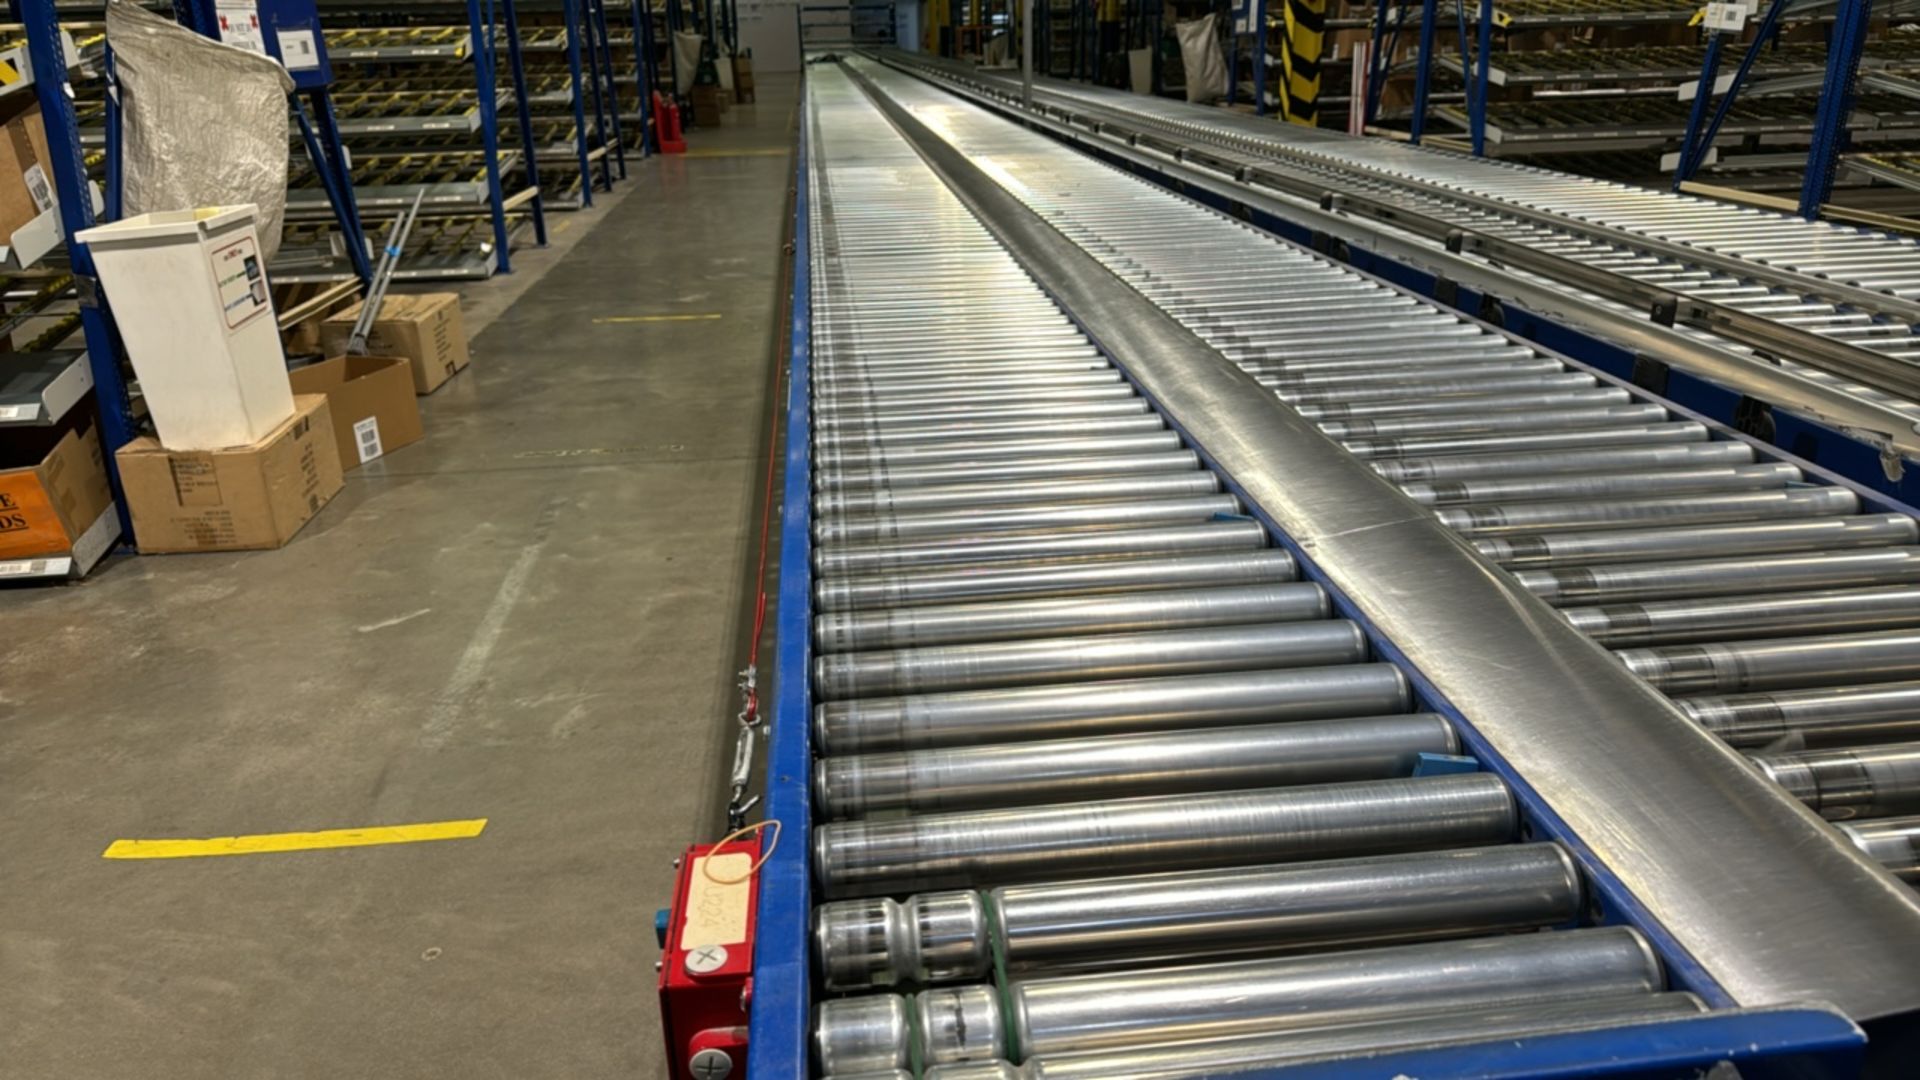 Motorised Roller Conveyor - 2 Rows - Image 8 of 8